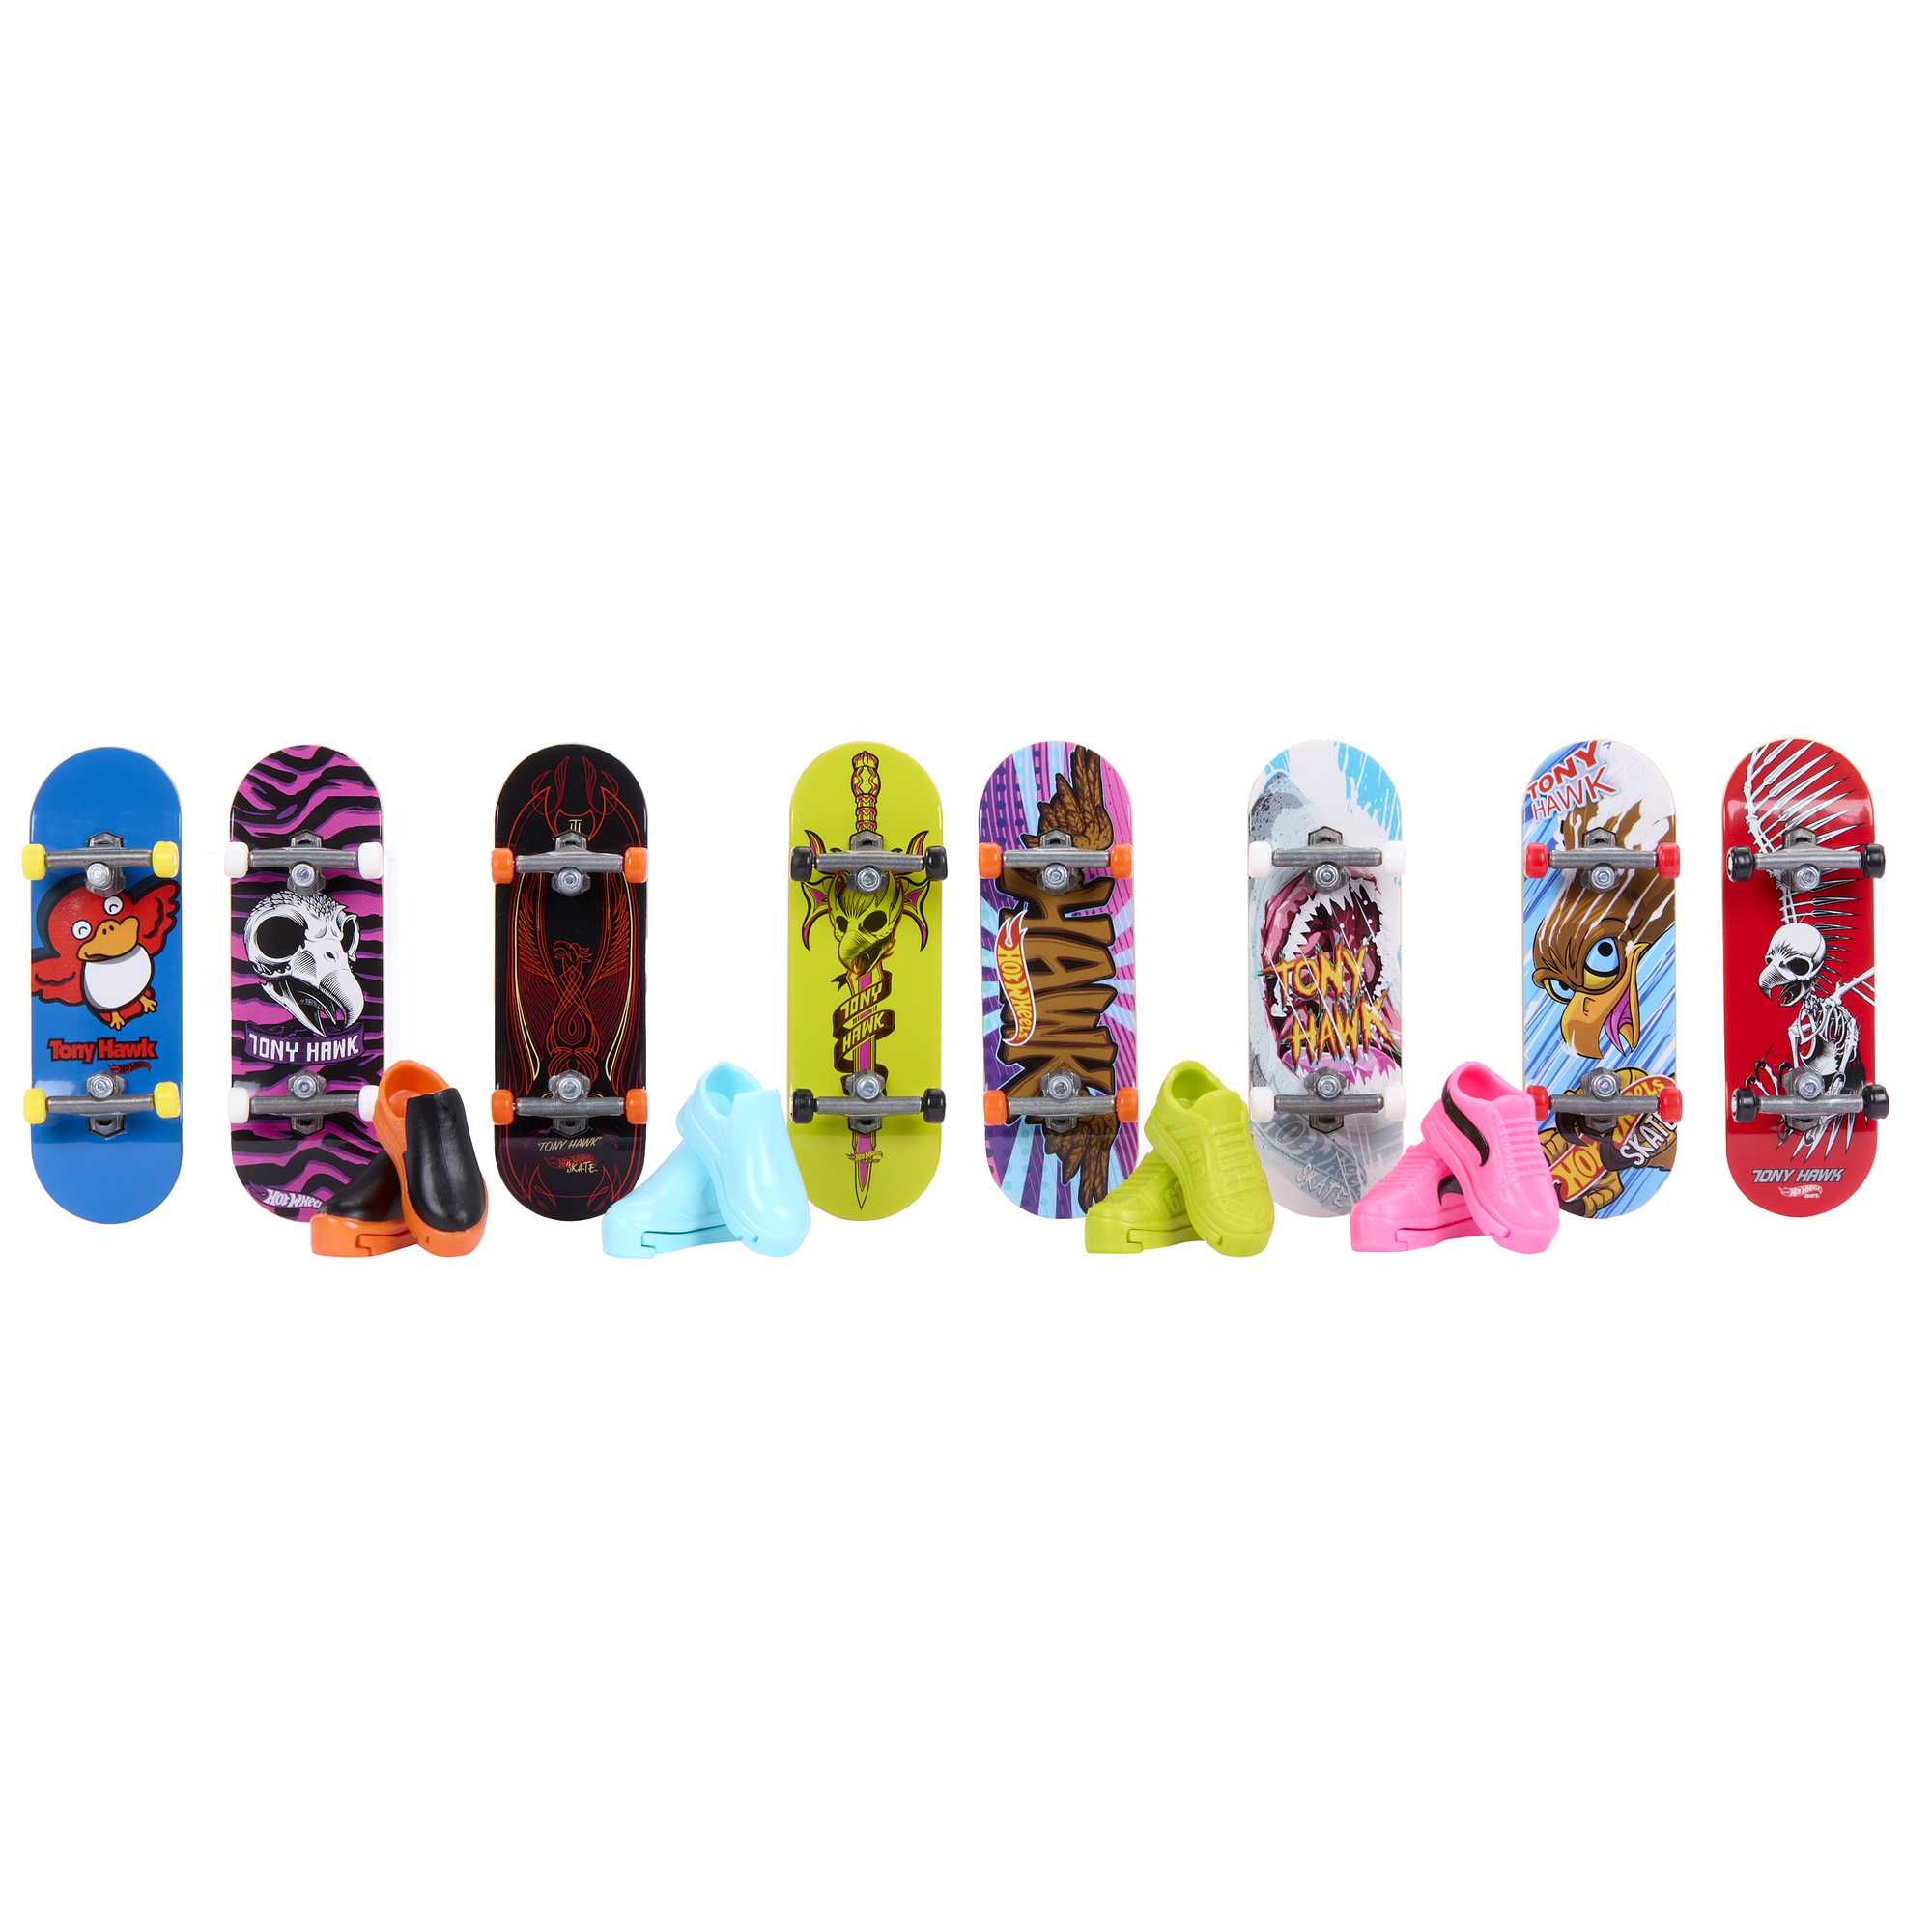 Promo Skateboard pour les doigts chez Action